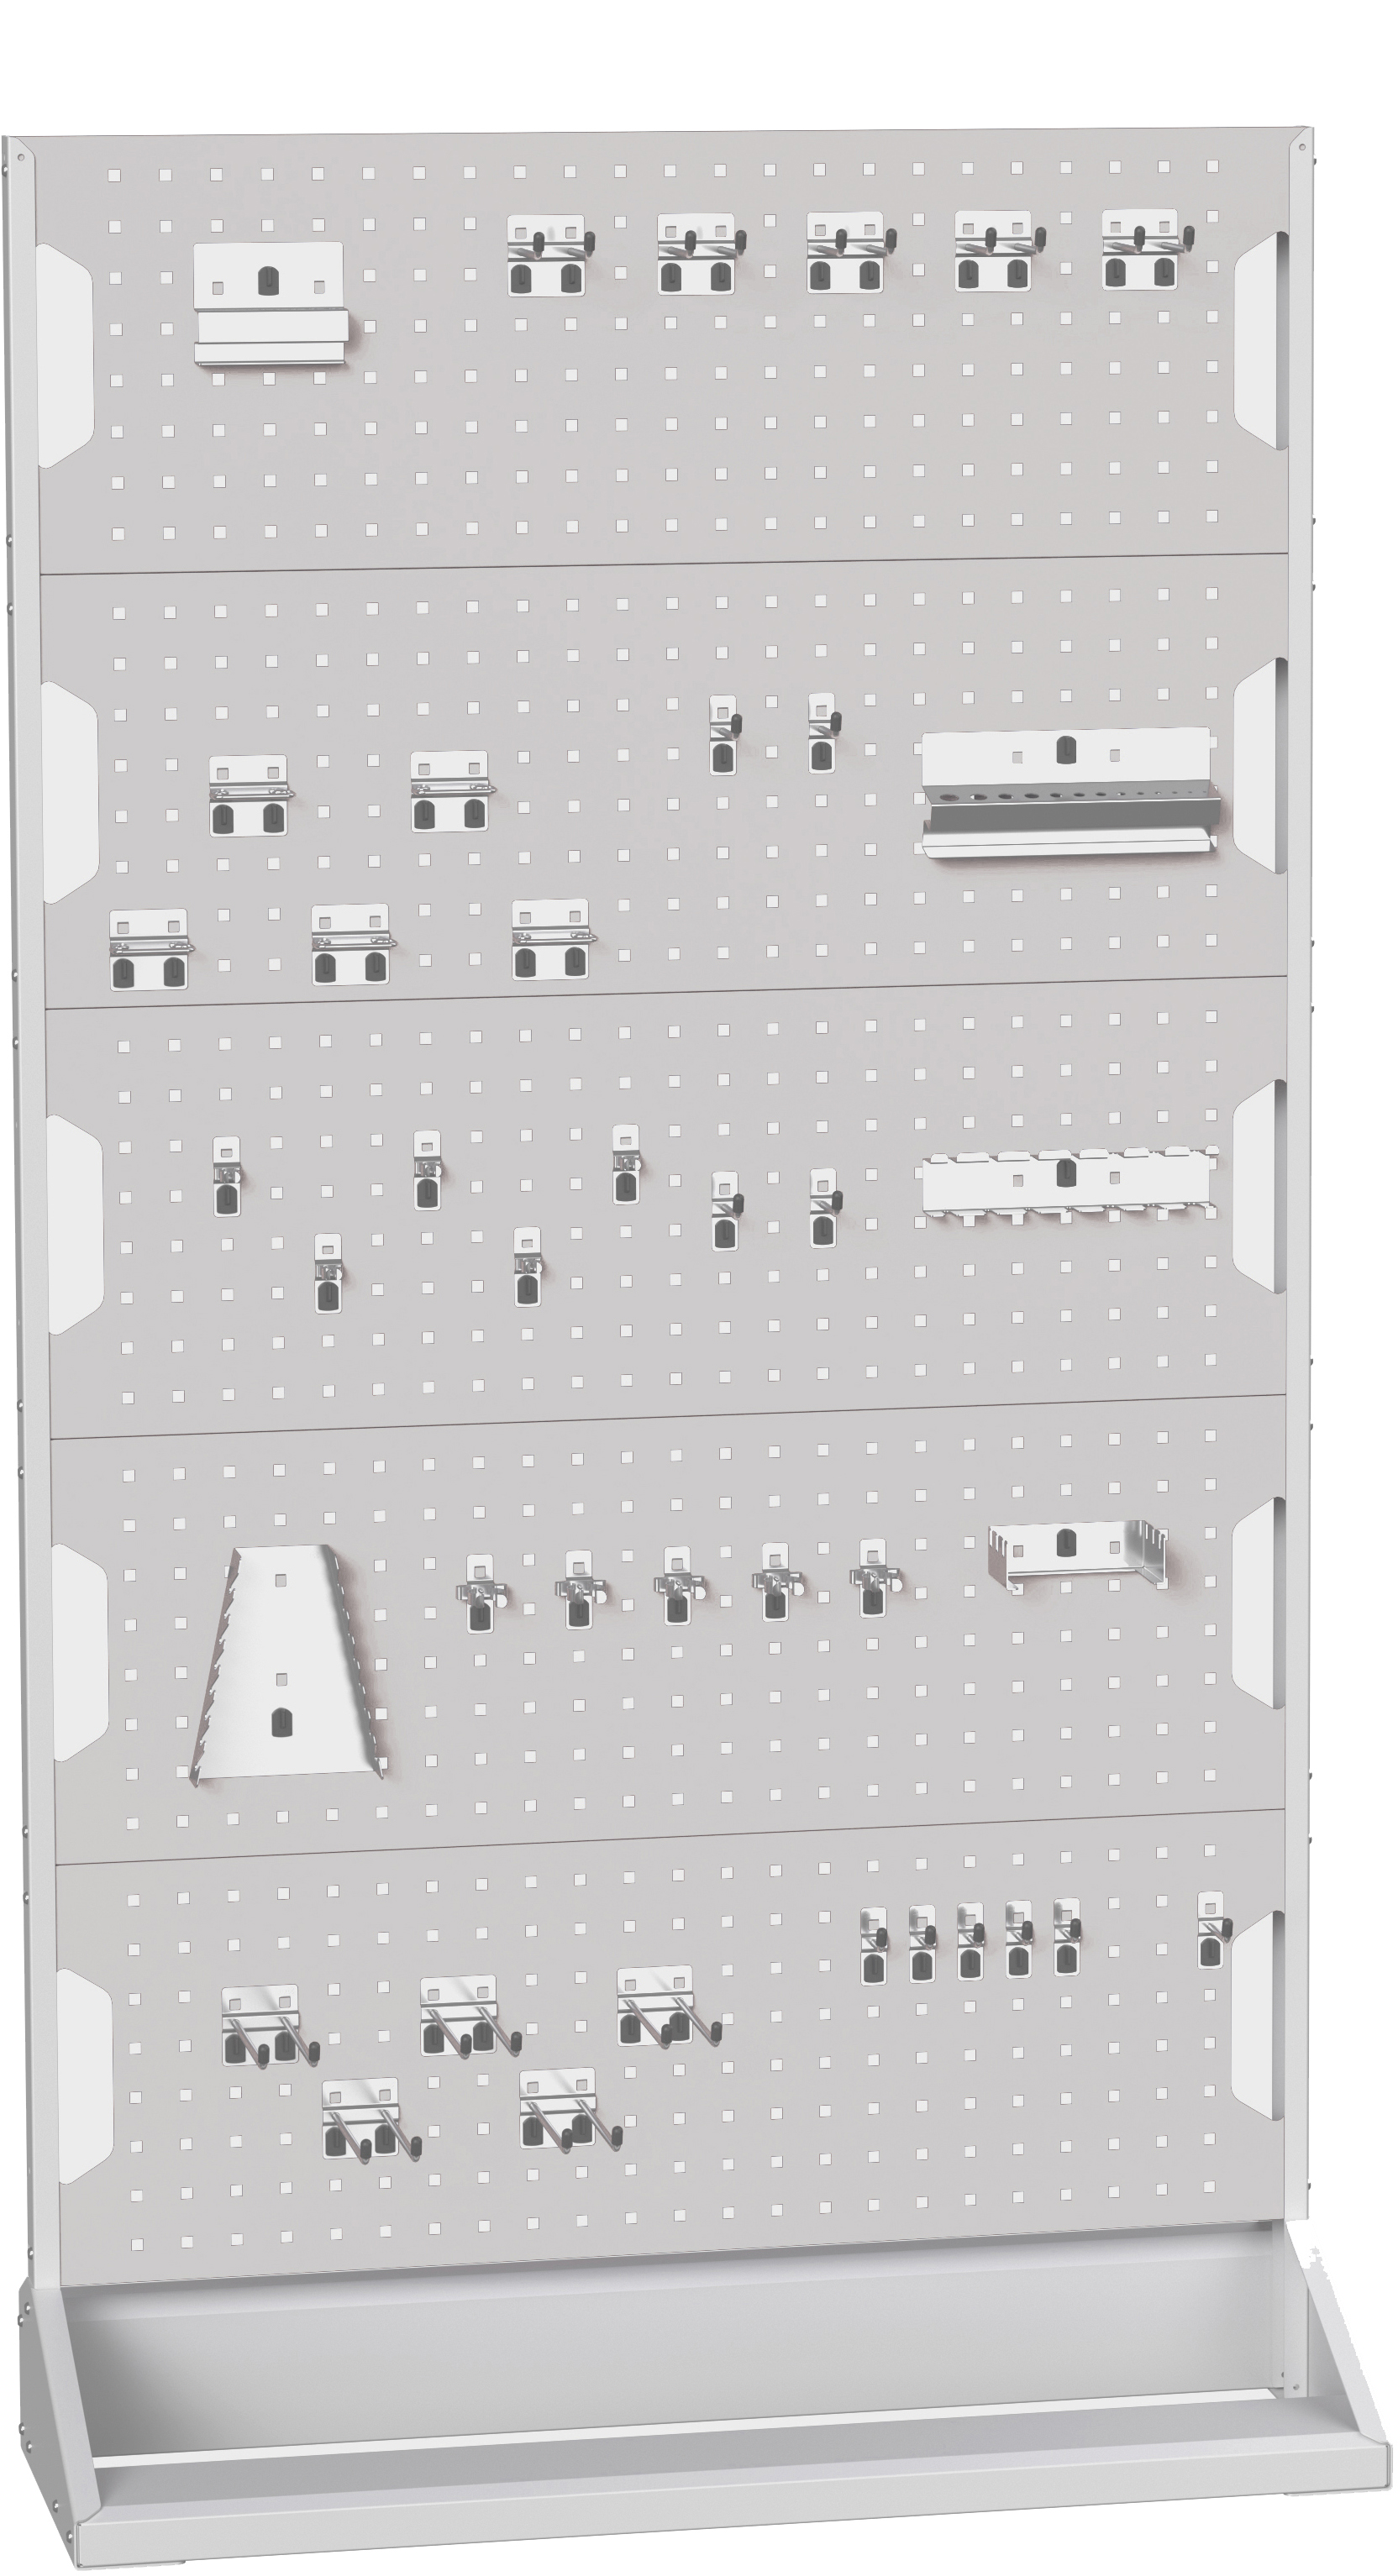 Bott Perfo Panel Rack (Single Sided) - 16917302.16V